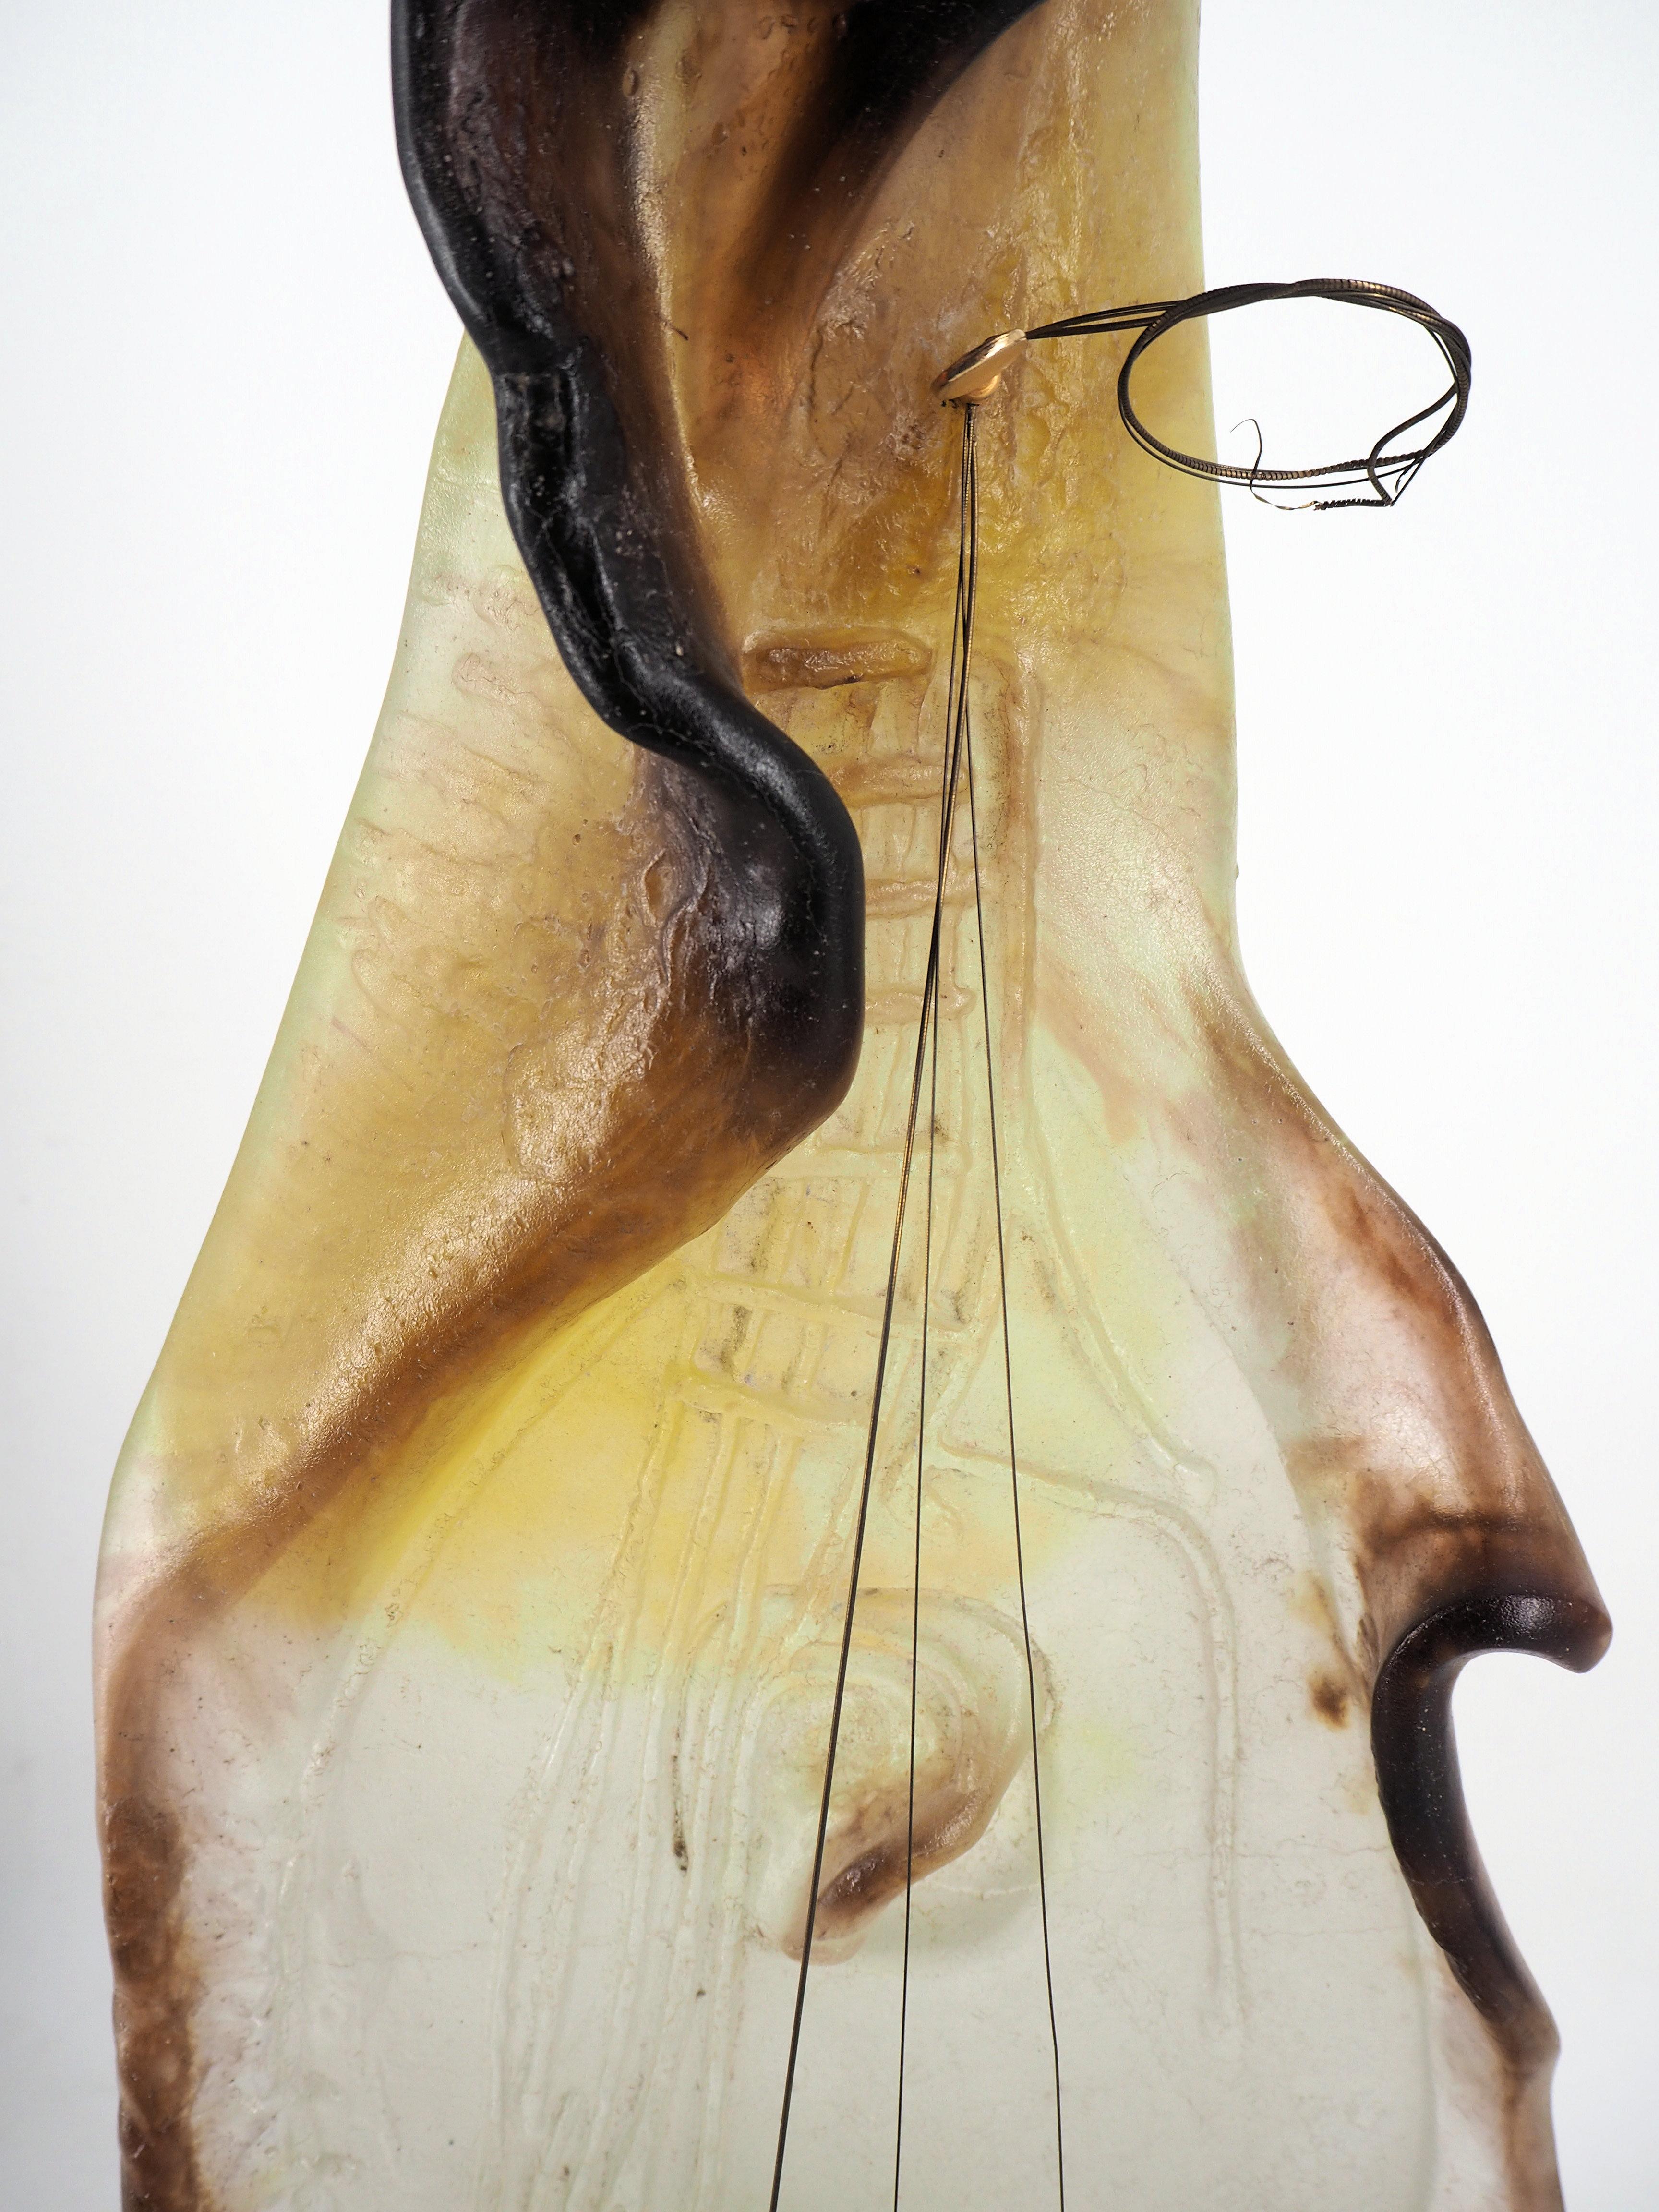 Guitar - Pate de verre sculpture, Signed - Daum 1967 (with certificate) - Beige Figurative Sculpture by Salvador Dalí